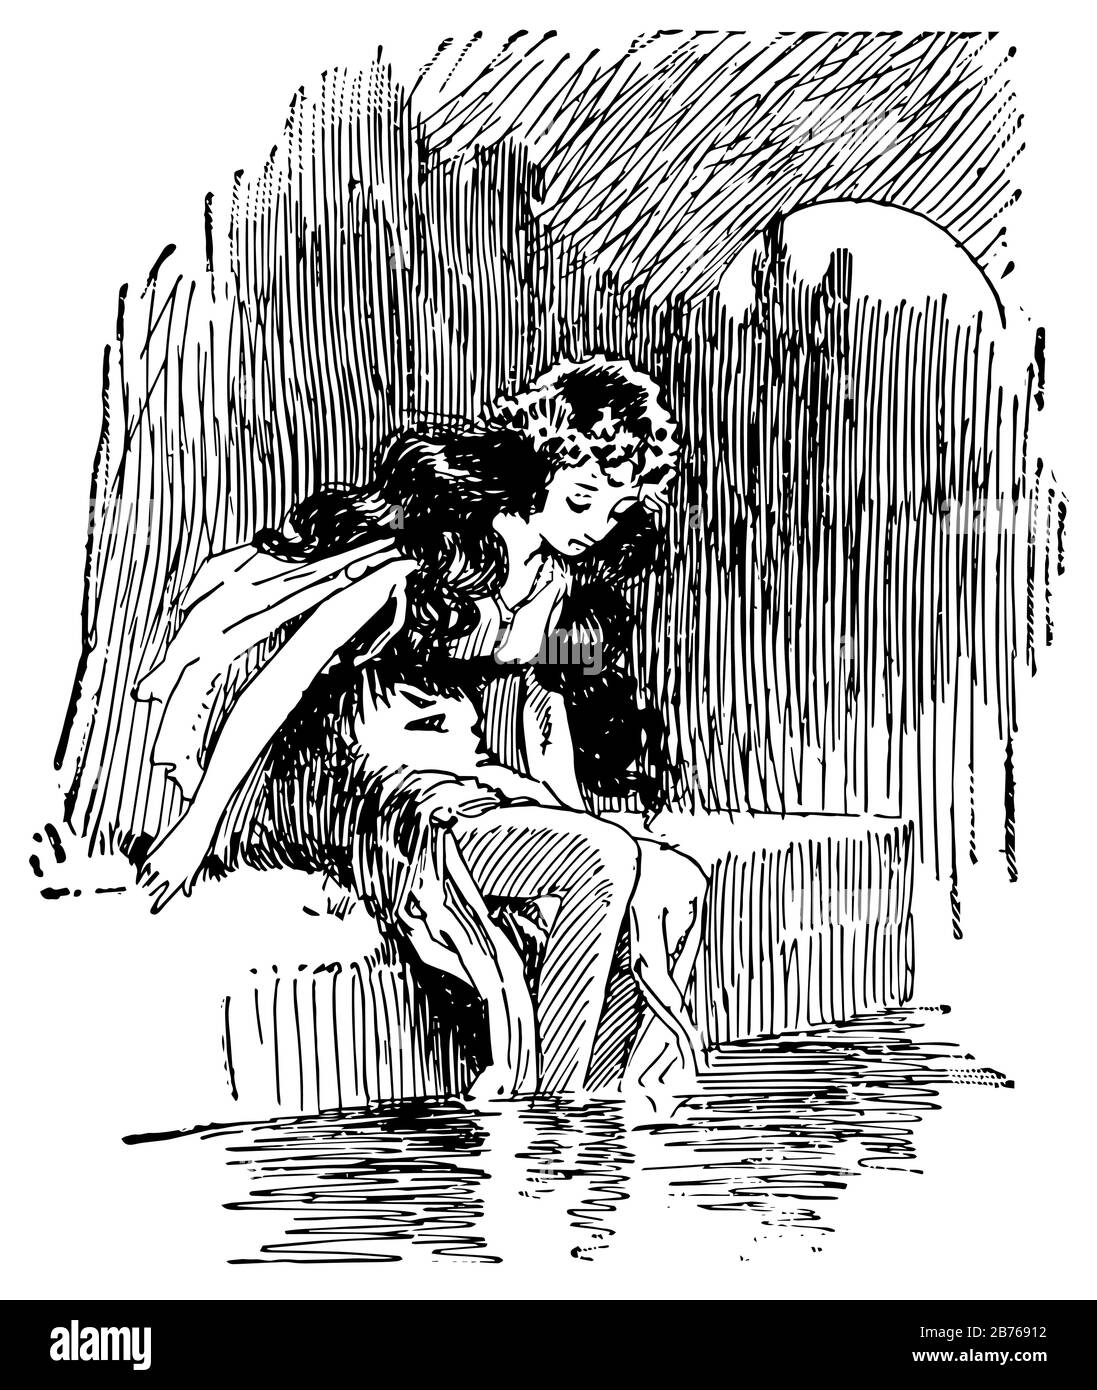 Kleine Meerjungfrau, diese Szene zeigt ein Mädchen, das in der Nähe von Wasser und ihren Beinen im Wasser sitzt, Vintage-Zeichnung oder Gravurdarstellung Stock Vektor